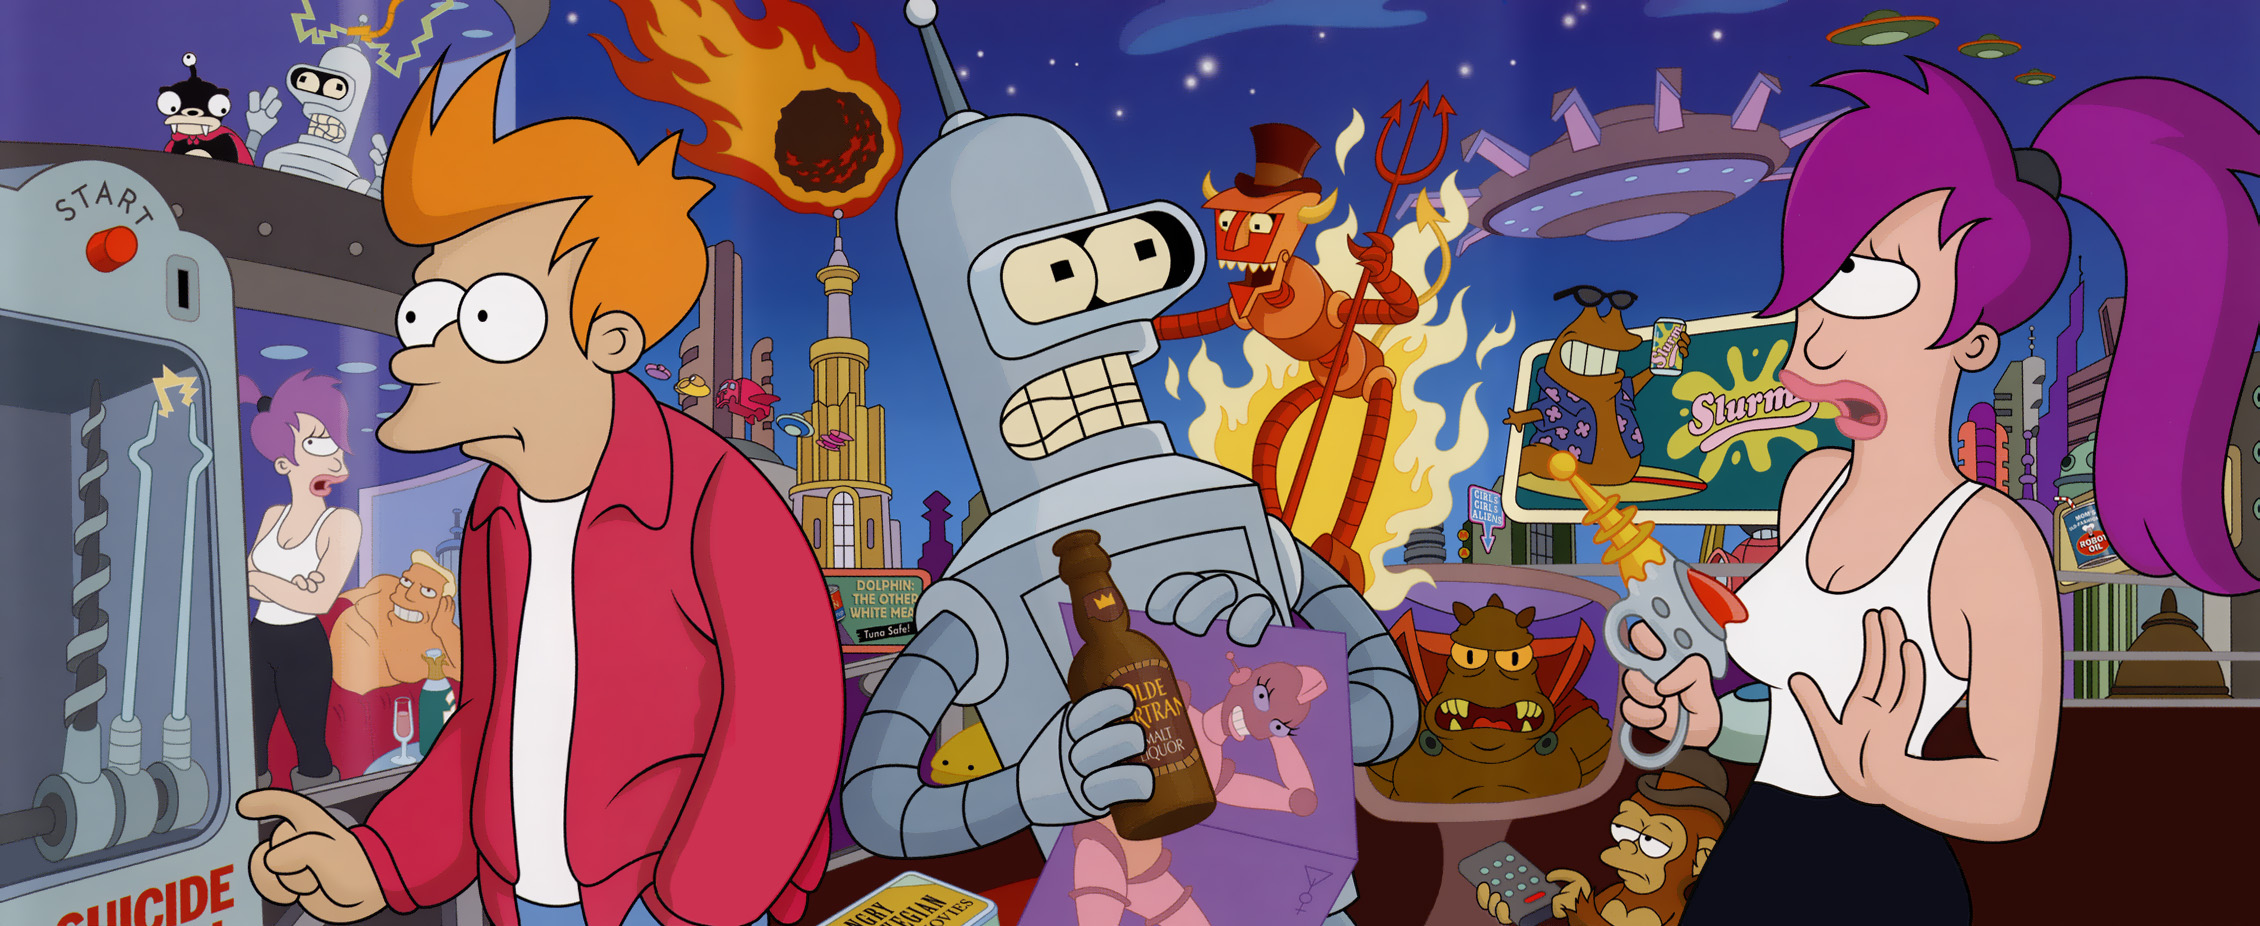 Bender Futurama Fry Futurama Futurama Leela Futurama Sci Fi 2260x926